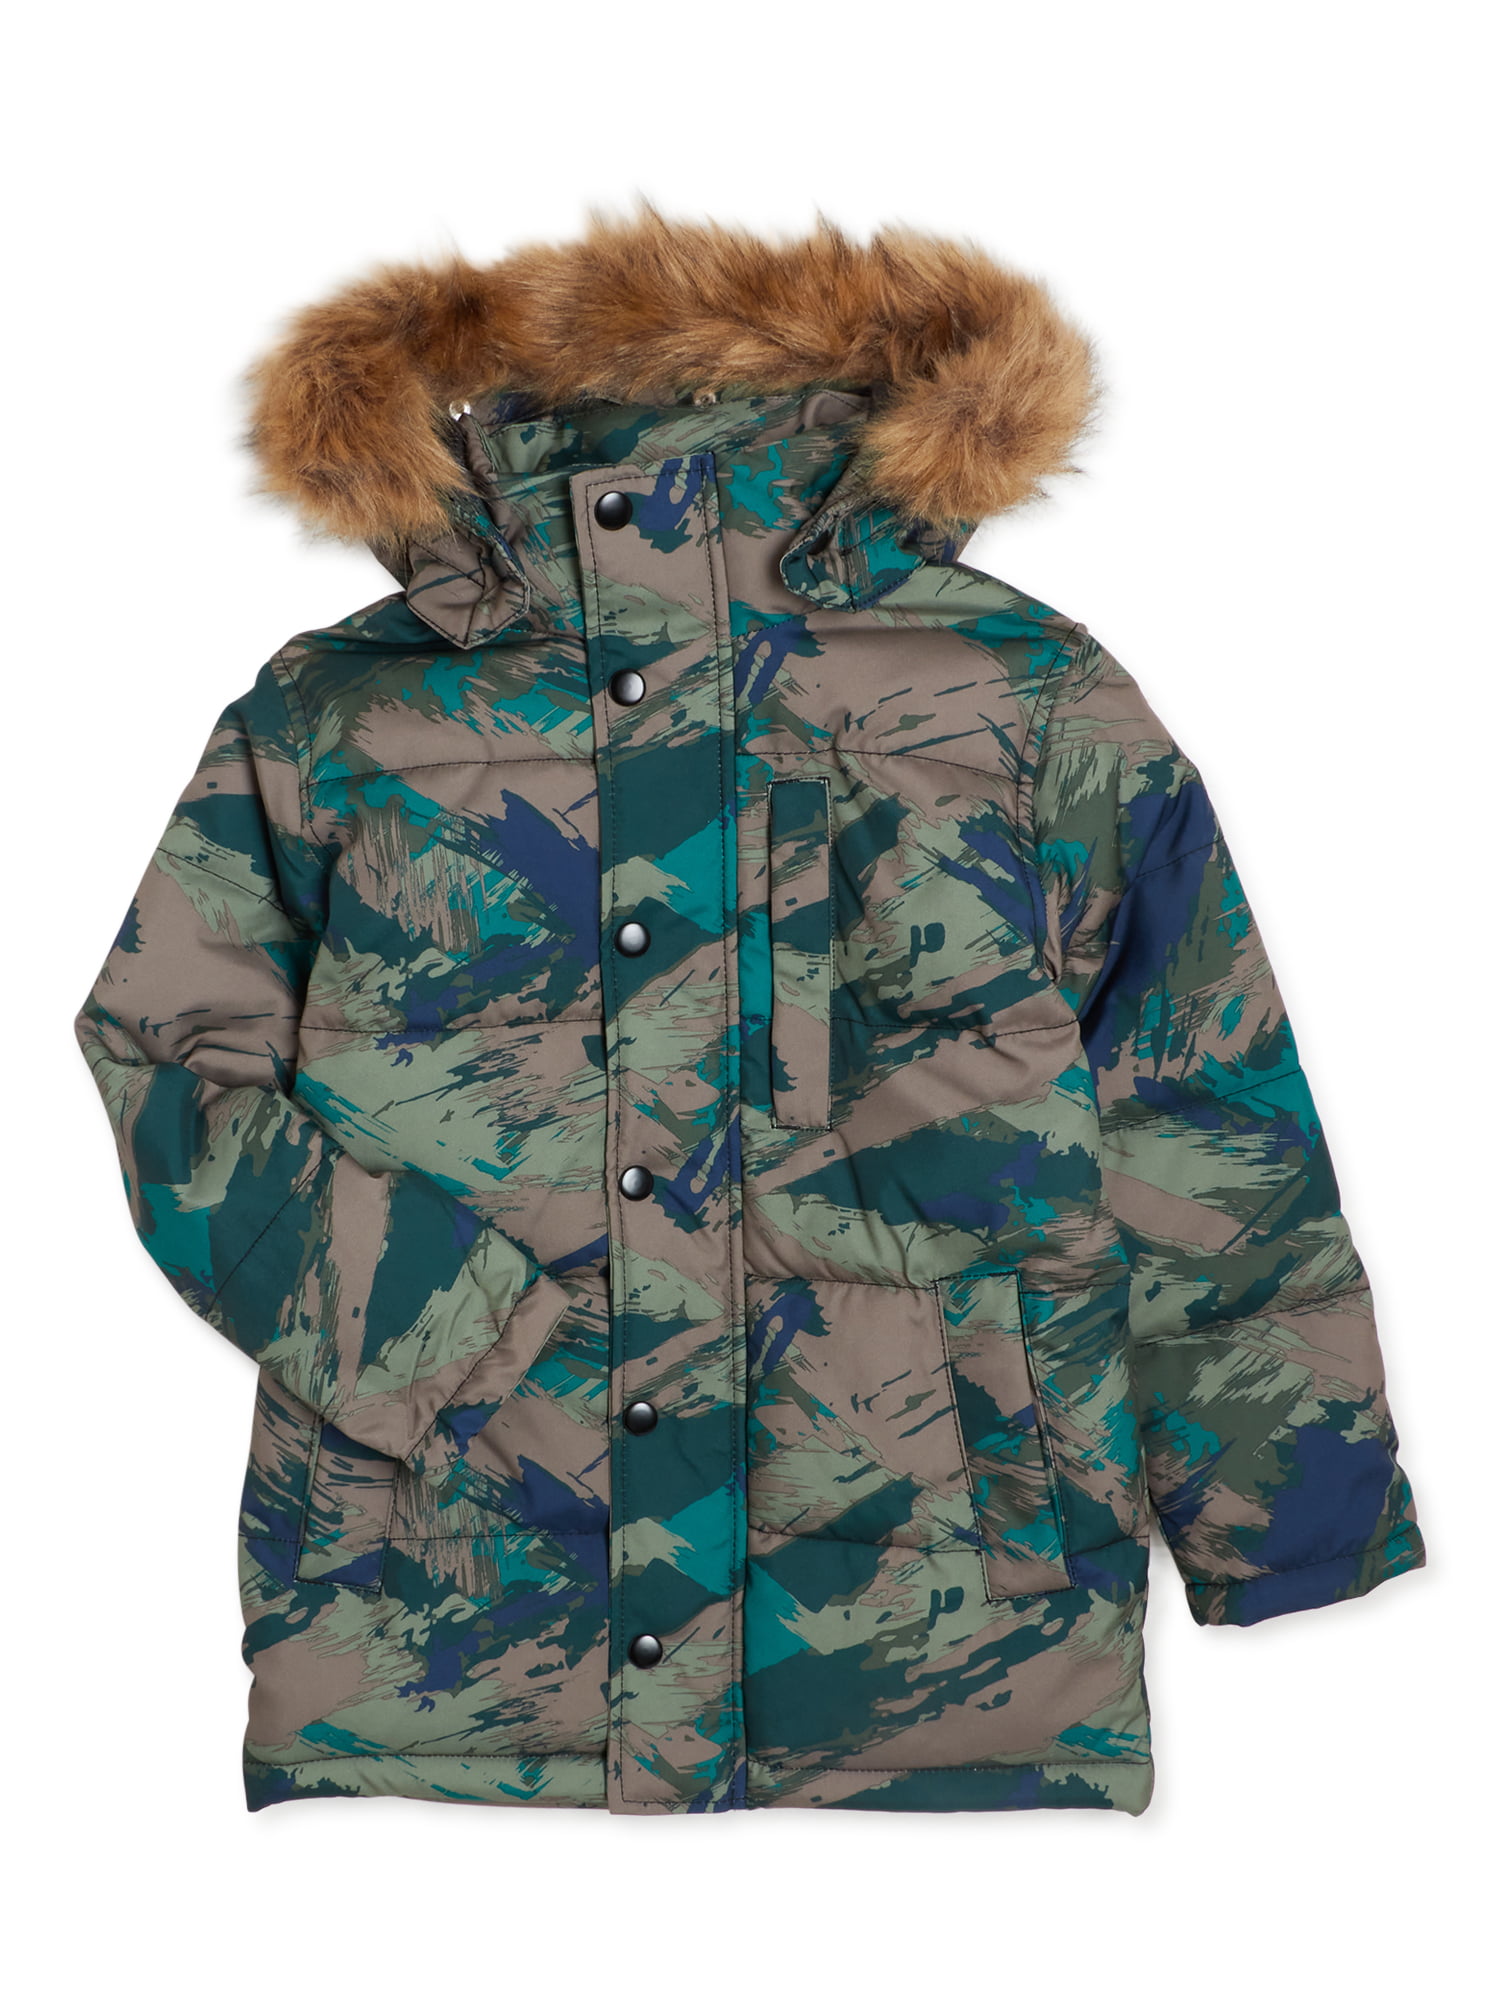 Swiss Tech Boys Winter Puffer Parka Jacket, Sizes 4-18 - Walmart.com